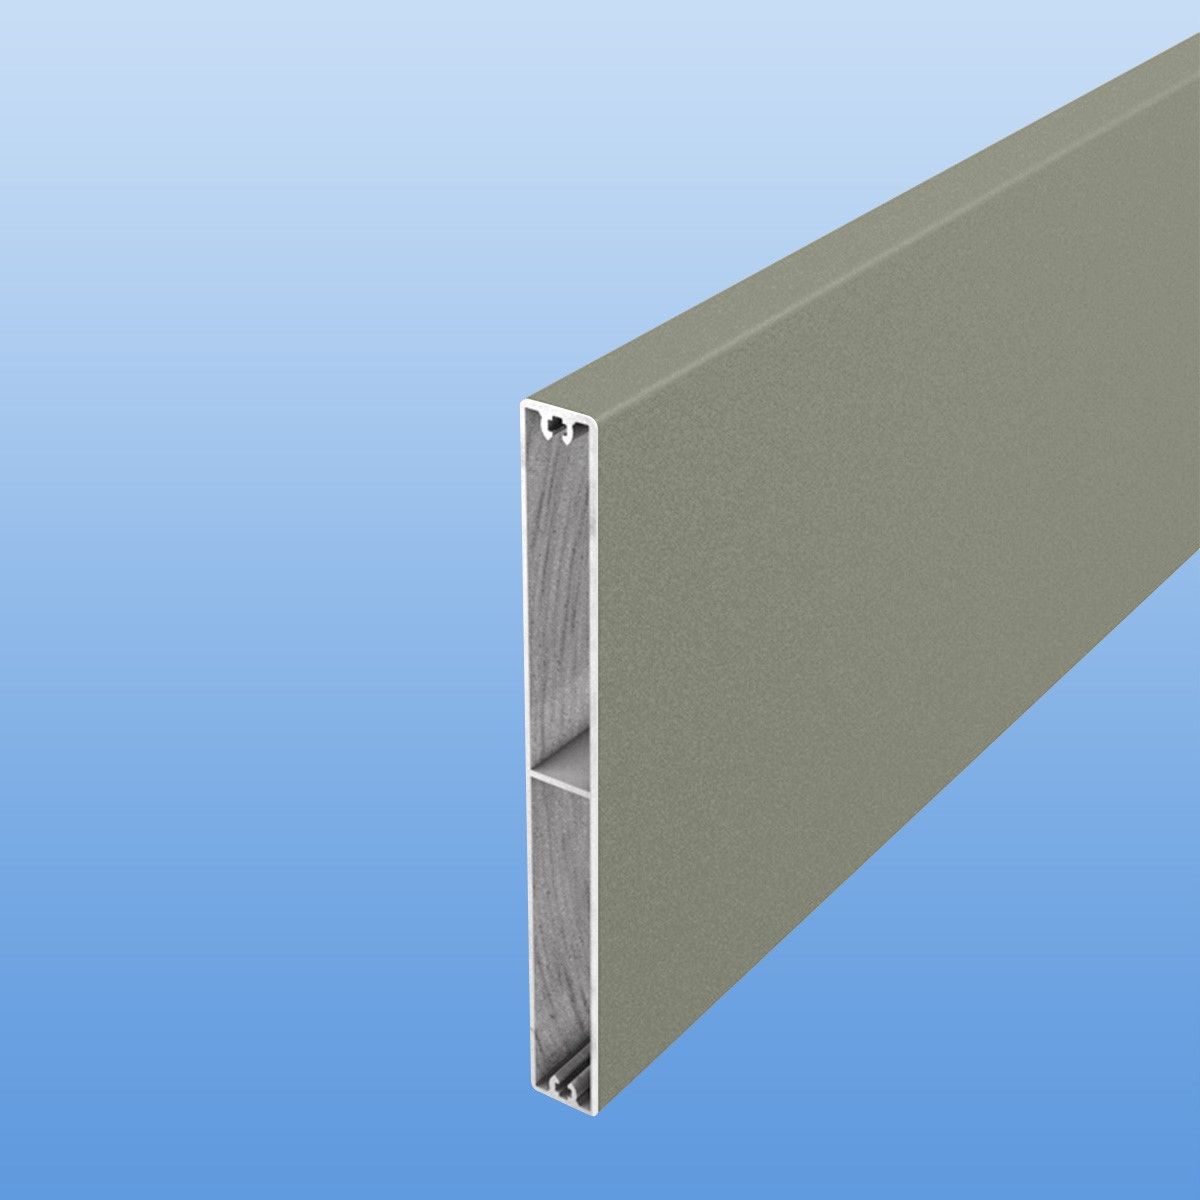 Balkonbretter aus Aluminium 150 mm breit in Grau (RAL 7030)